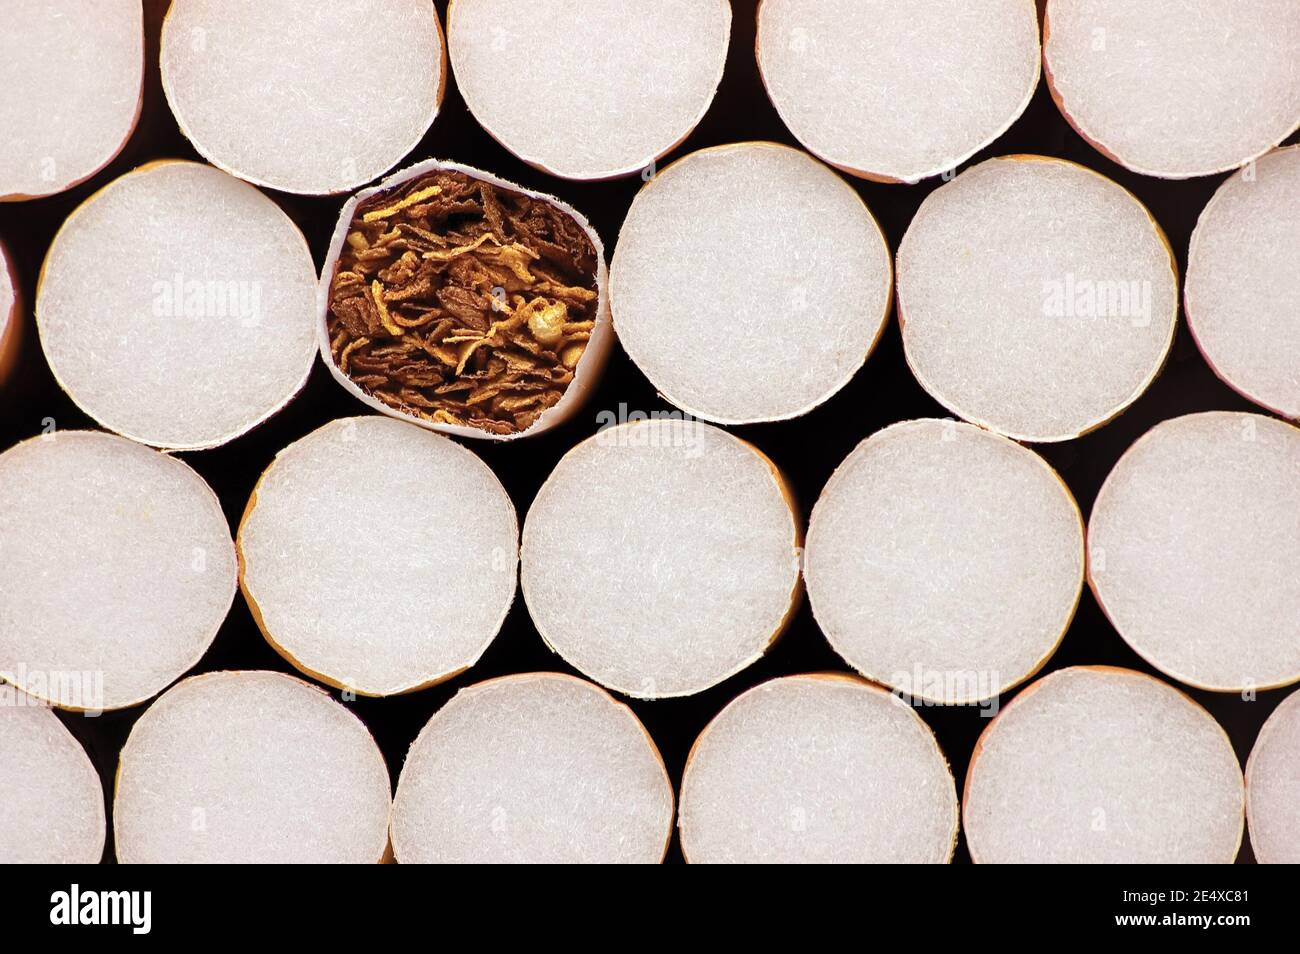 Gestapelte Filter Zigaretten, Makro Nahaufnahme Muster, Rauchen Sucht  Konzept, Große Detaillierte Horizontale Mehrere Zigarette Stapel  Hintergrund, Flat Lay Stockfotografie - Alamy